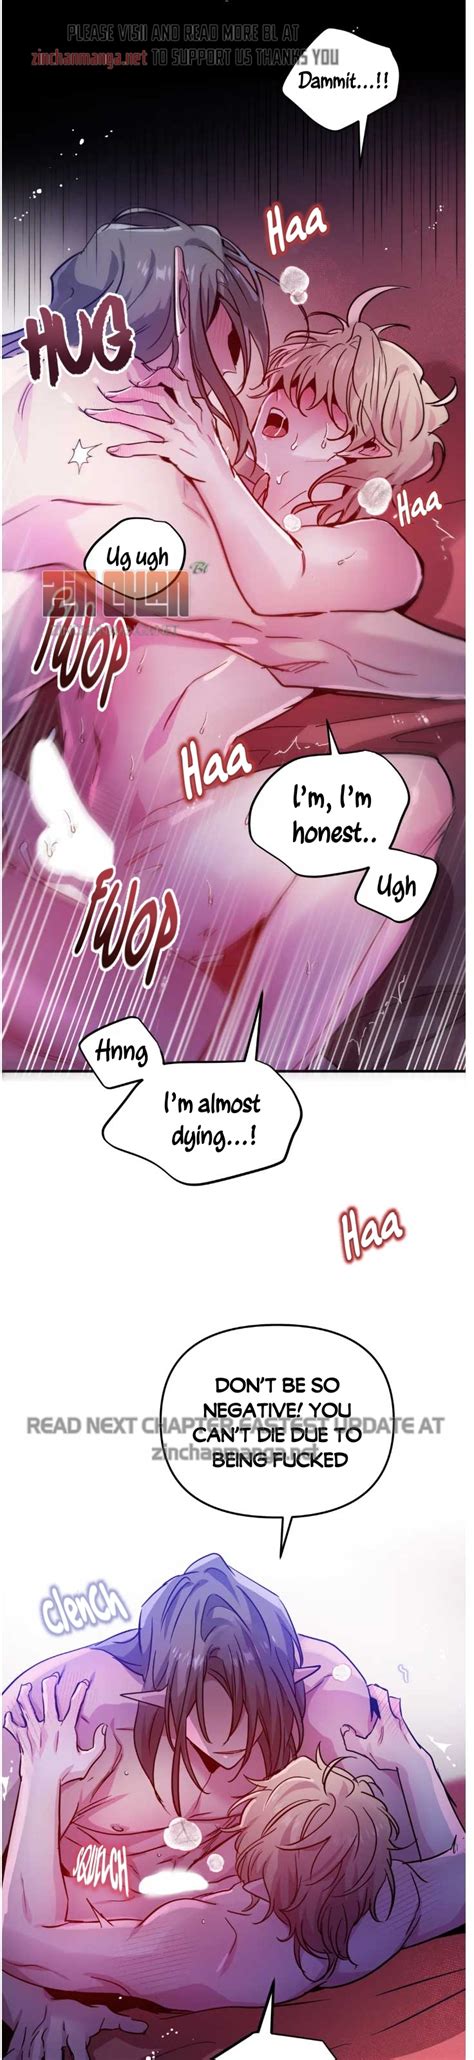 Dark fall [Zinchanmanga] - chapter-21.2 - Zinchan Manga